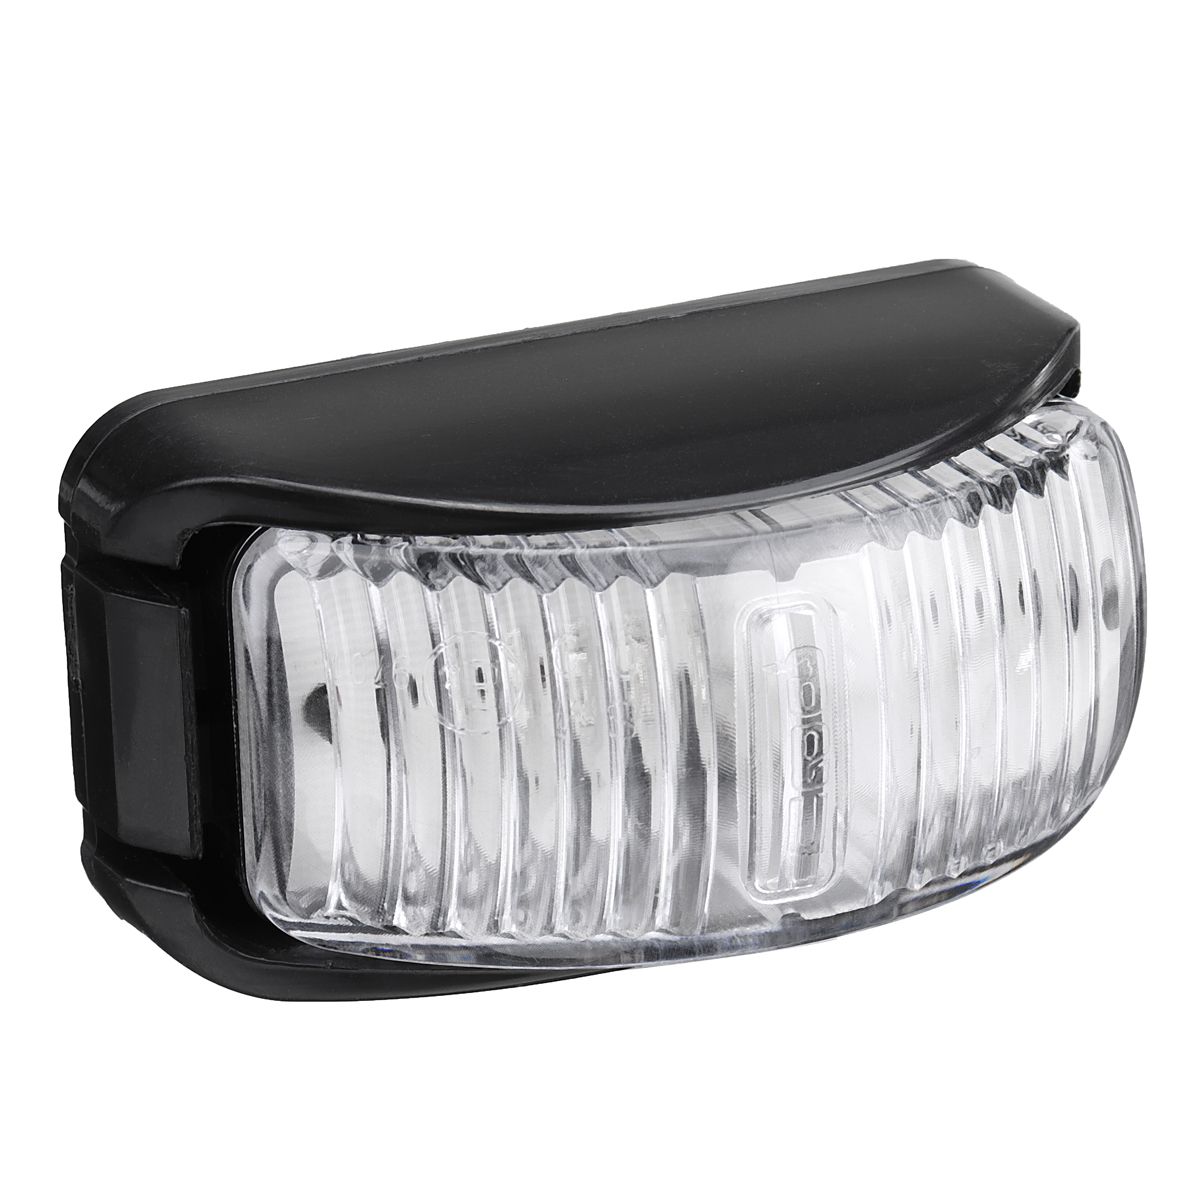 LED-Side-Marker-Light-Clearance-Lamp-12V-24V-For-Truck-Trailer-Caravan-1721577